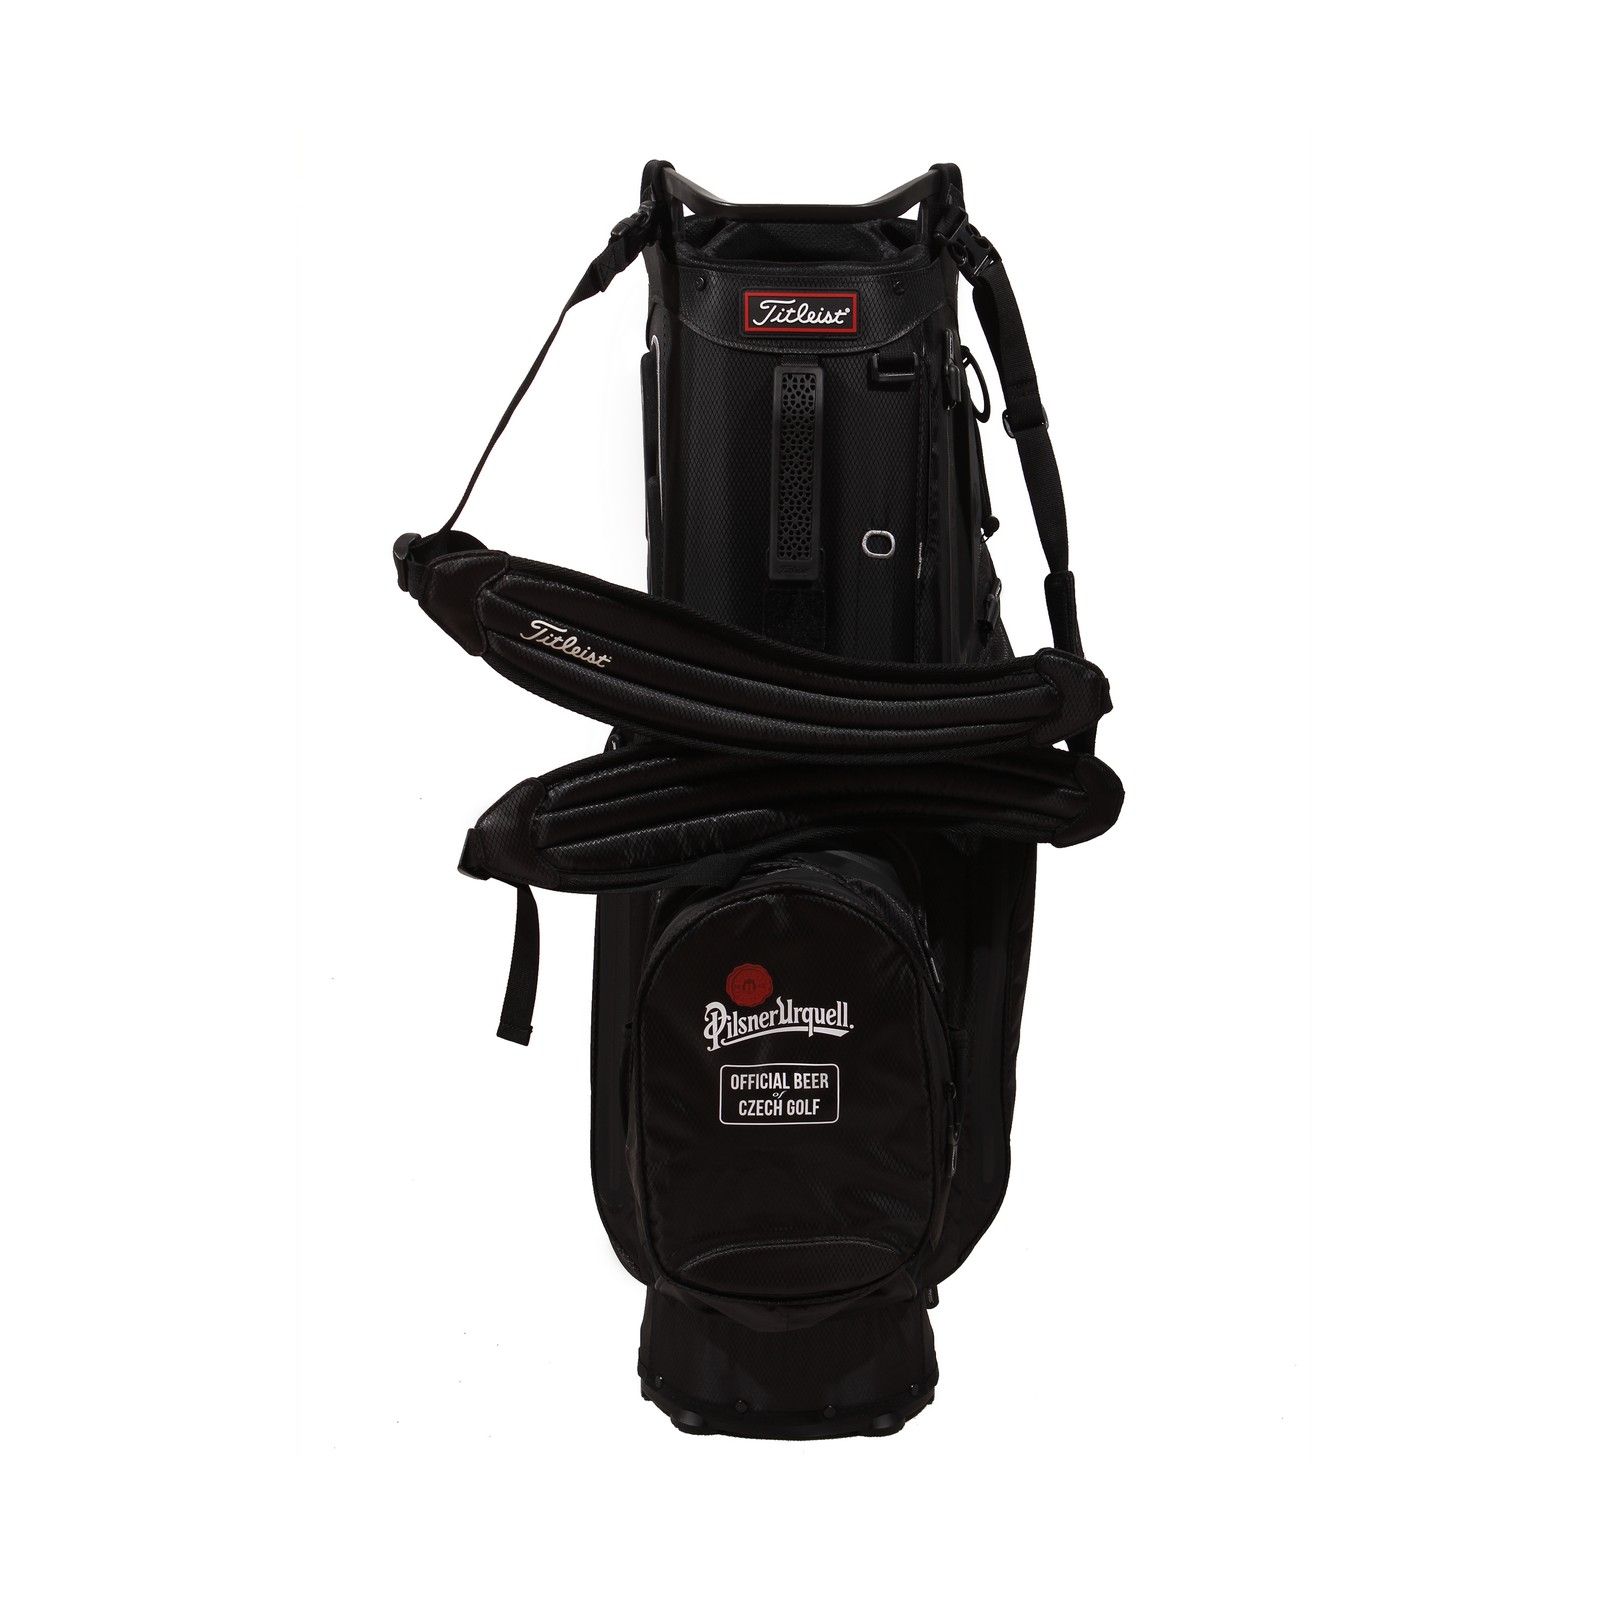 Titleist golf bag for 14 clubs